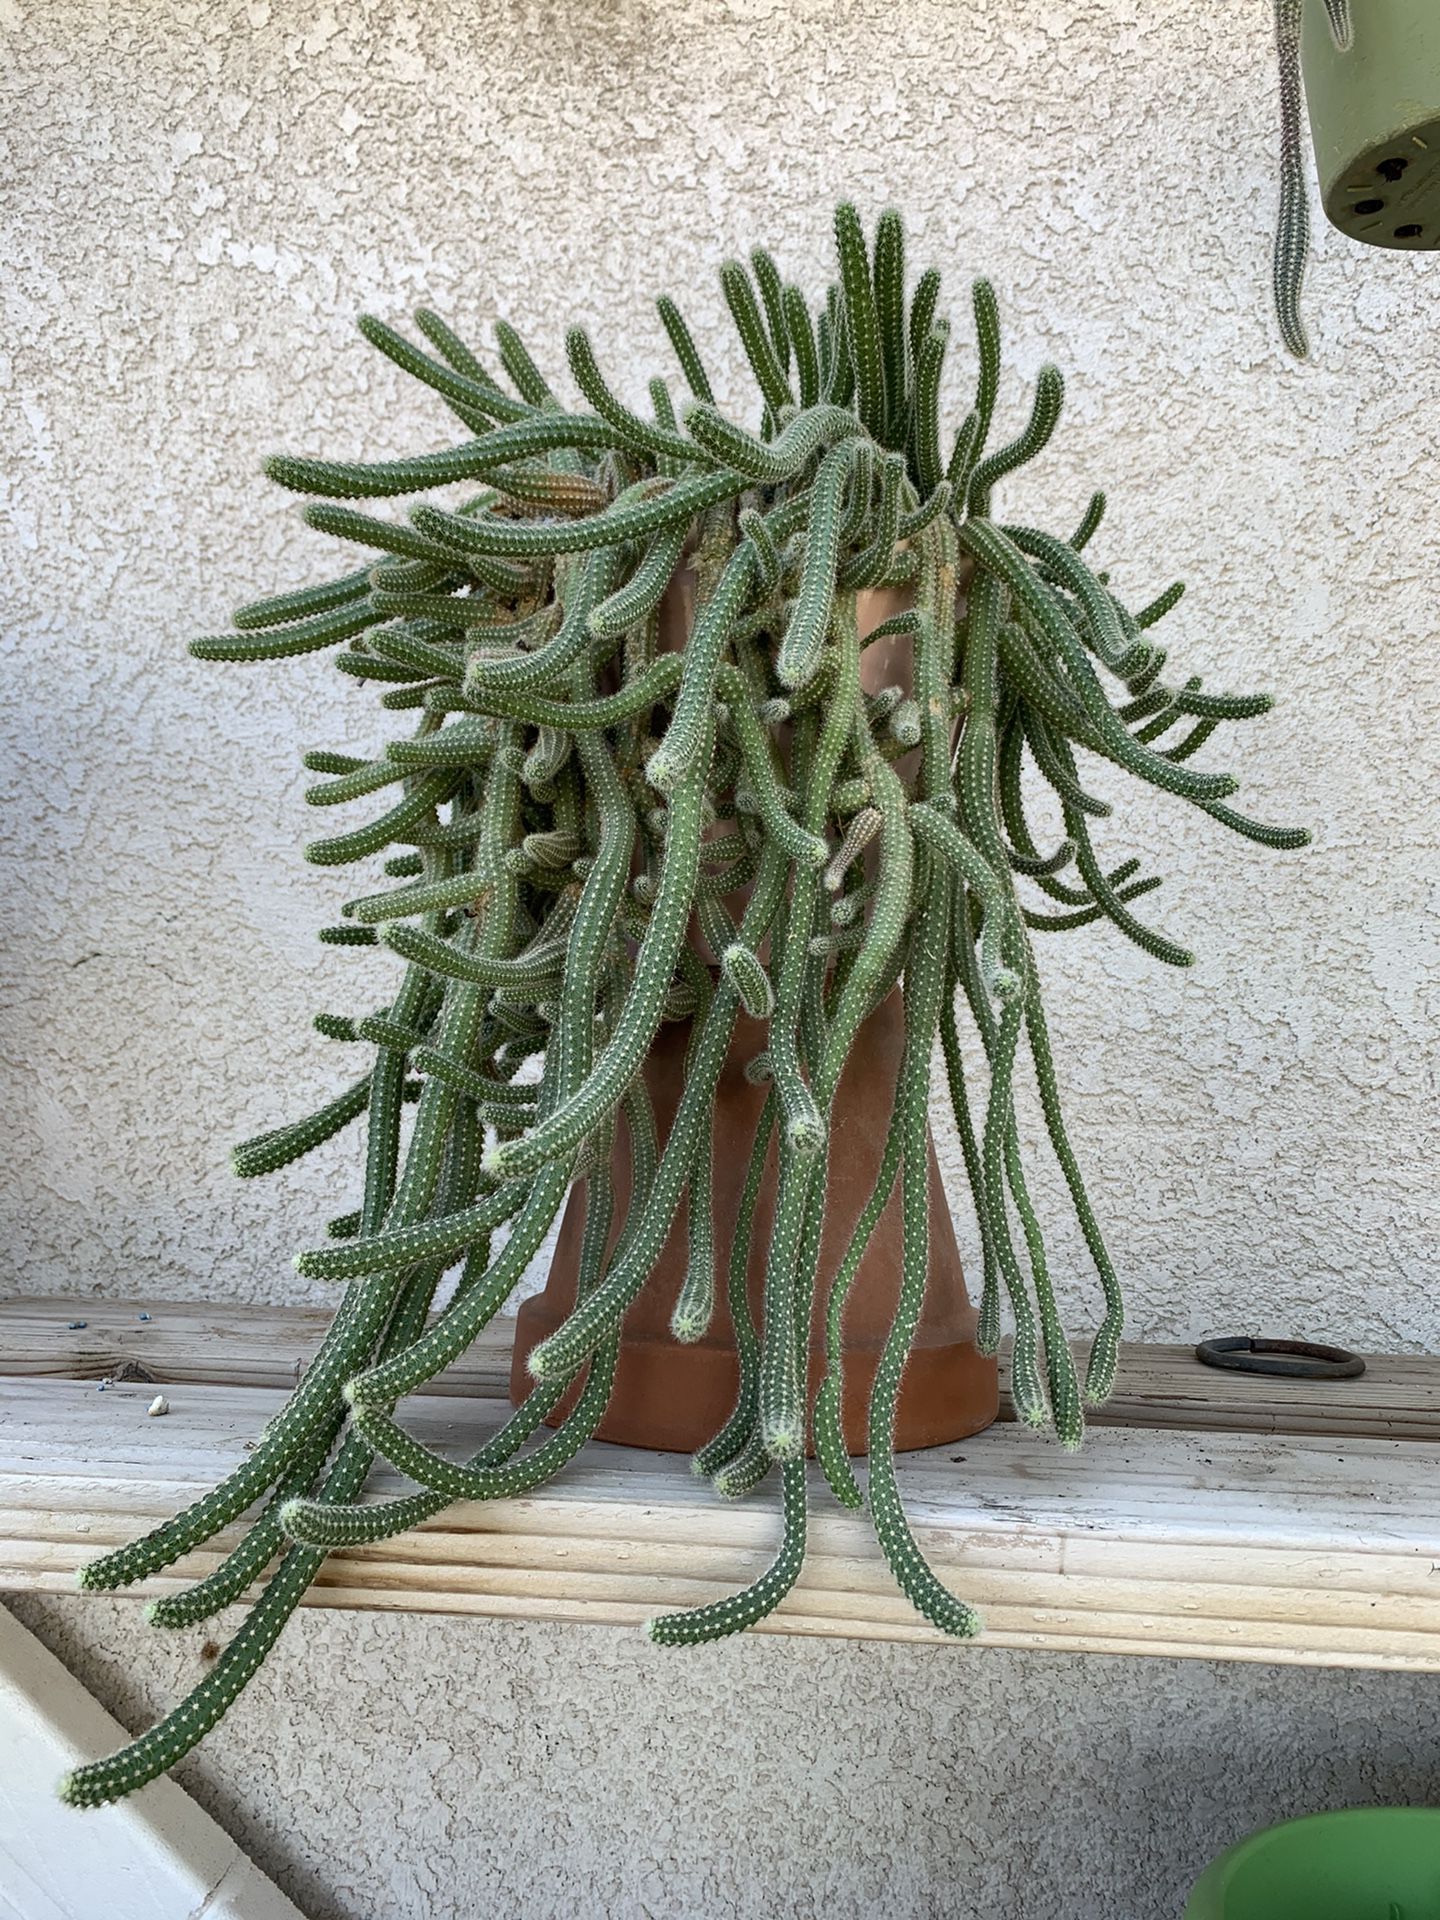 Echinopsis chamaecereus aka Peanut cactus